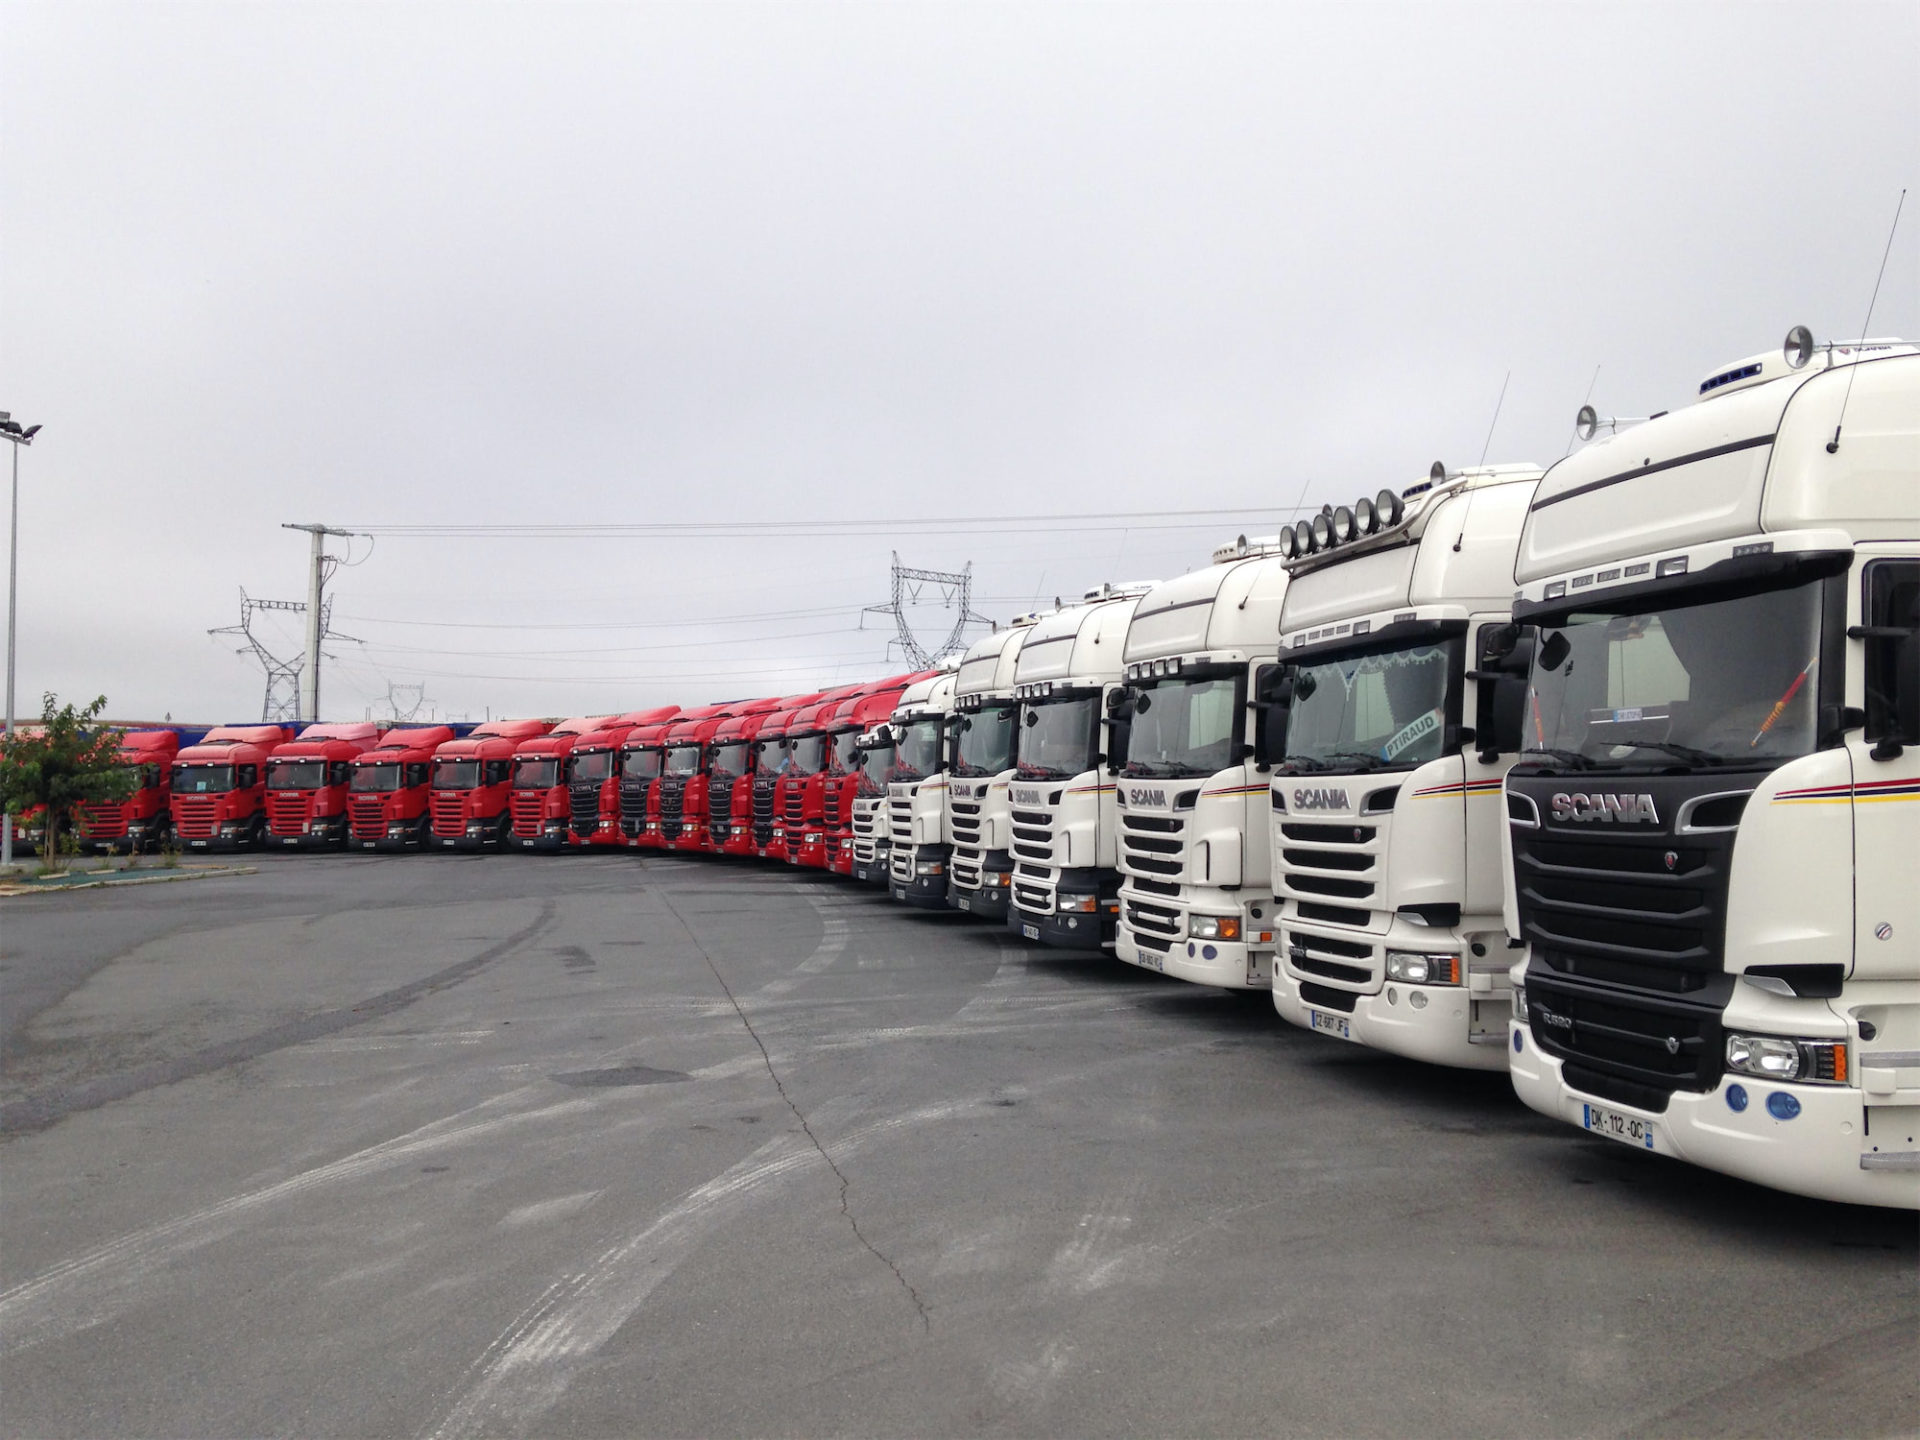 Rangée de camions rouges et blancs Transports Diguet - Clémot